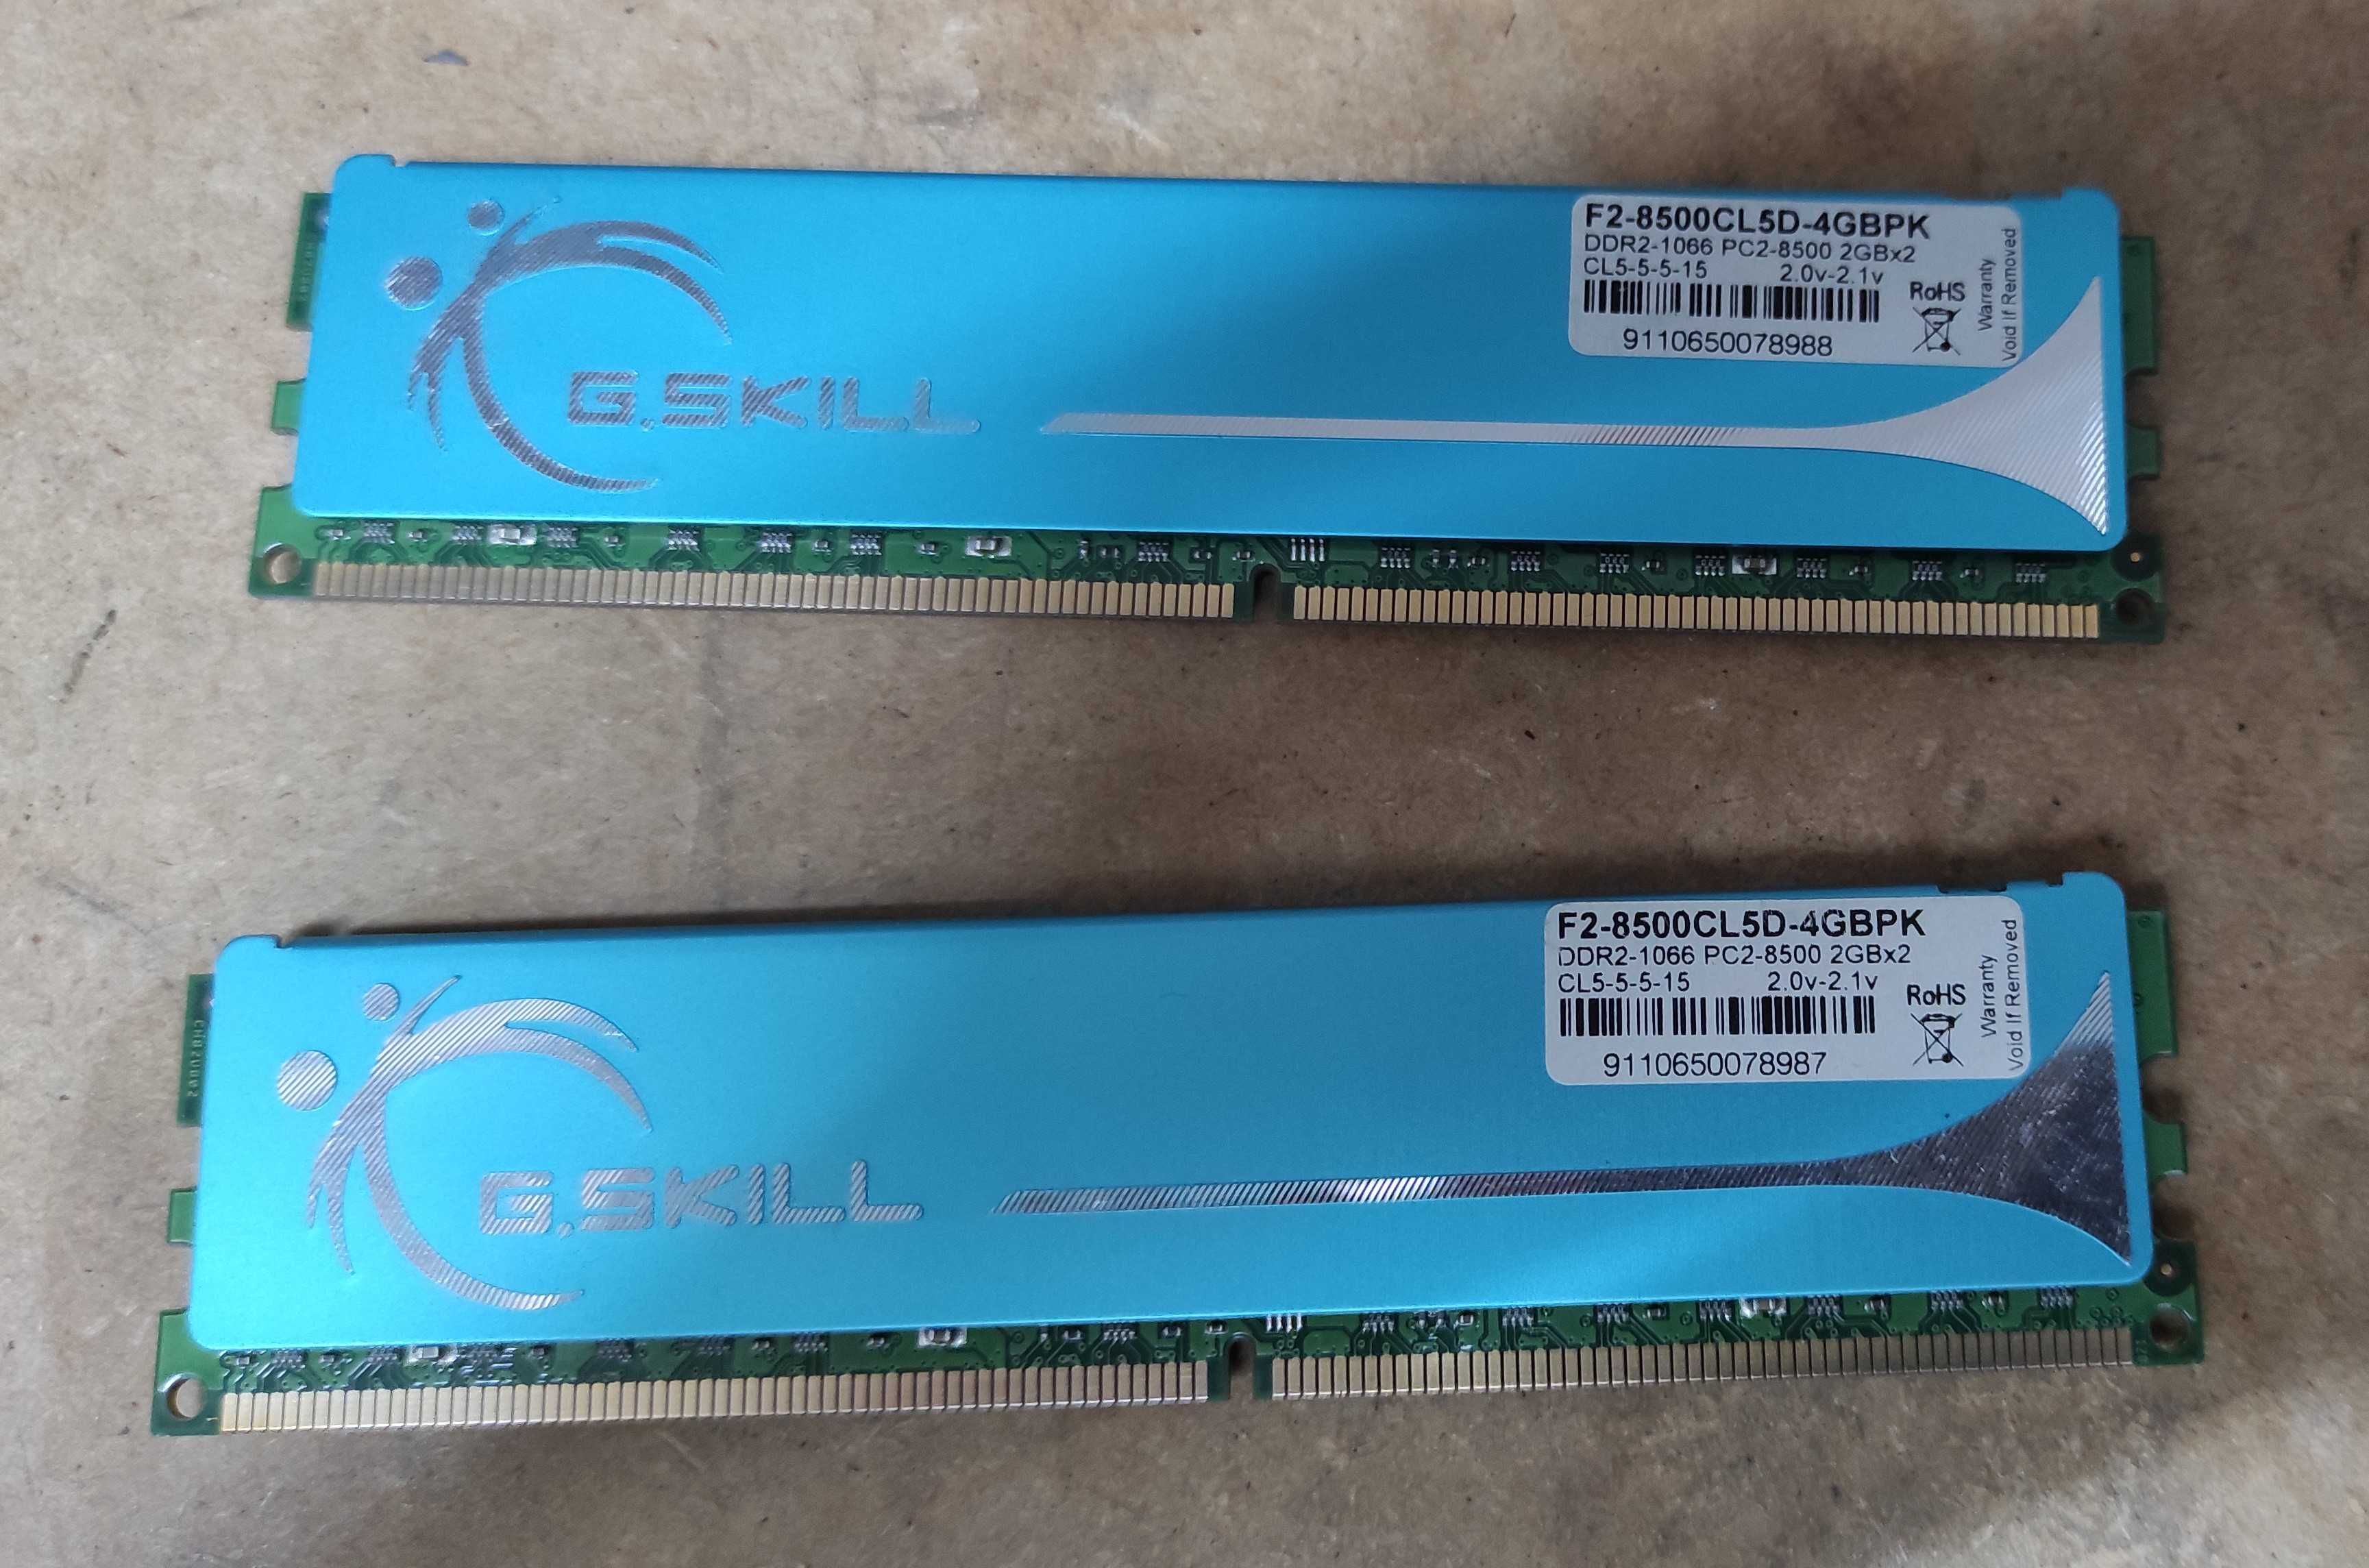 Kit RAM 4Gb (2x2Gb) DDR2 1066MHz pc2-8500 Gskill f2-8500cl5d-4gbpk